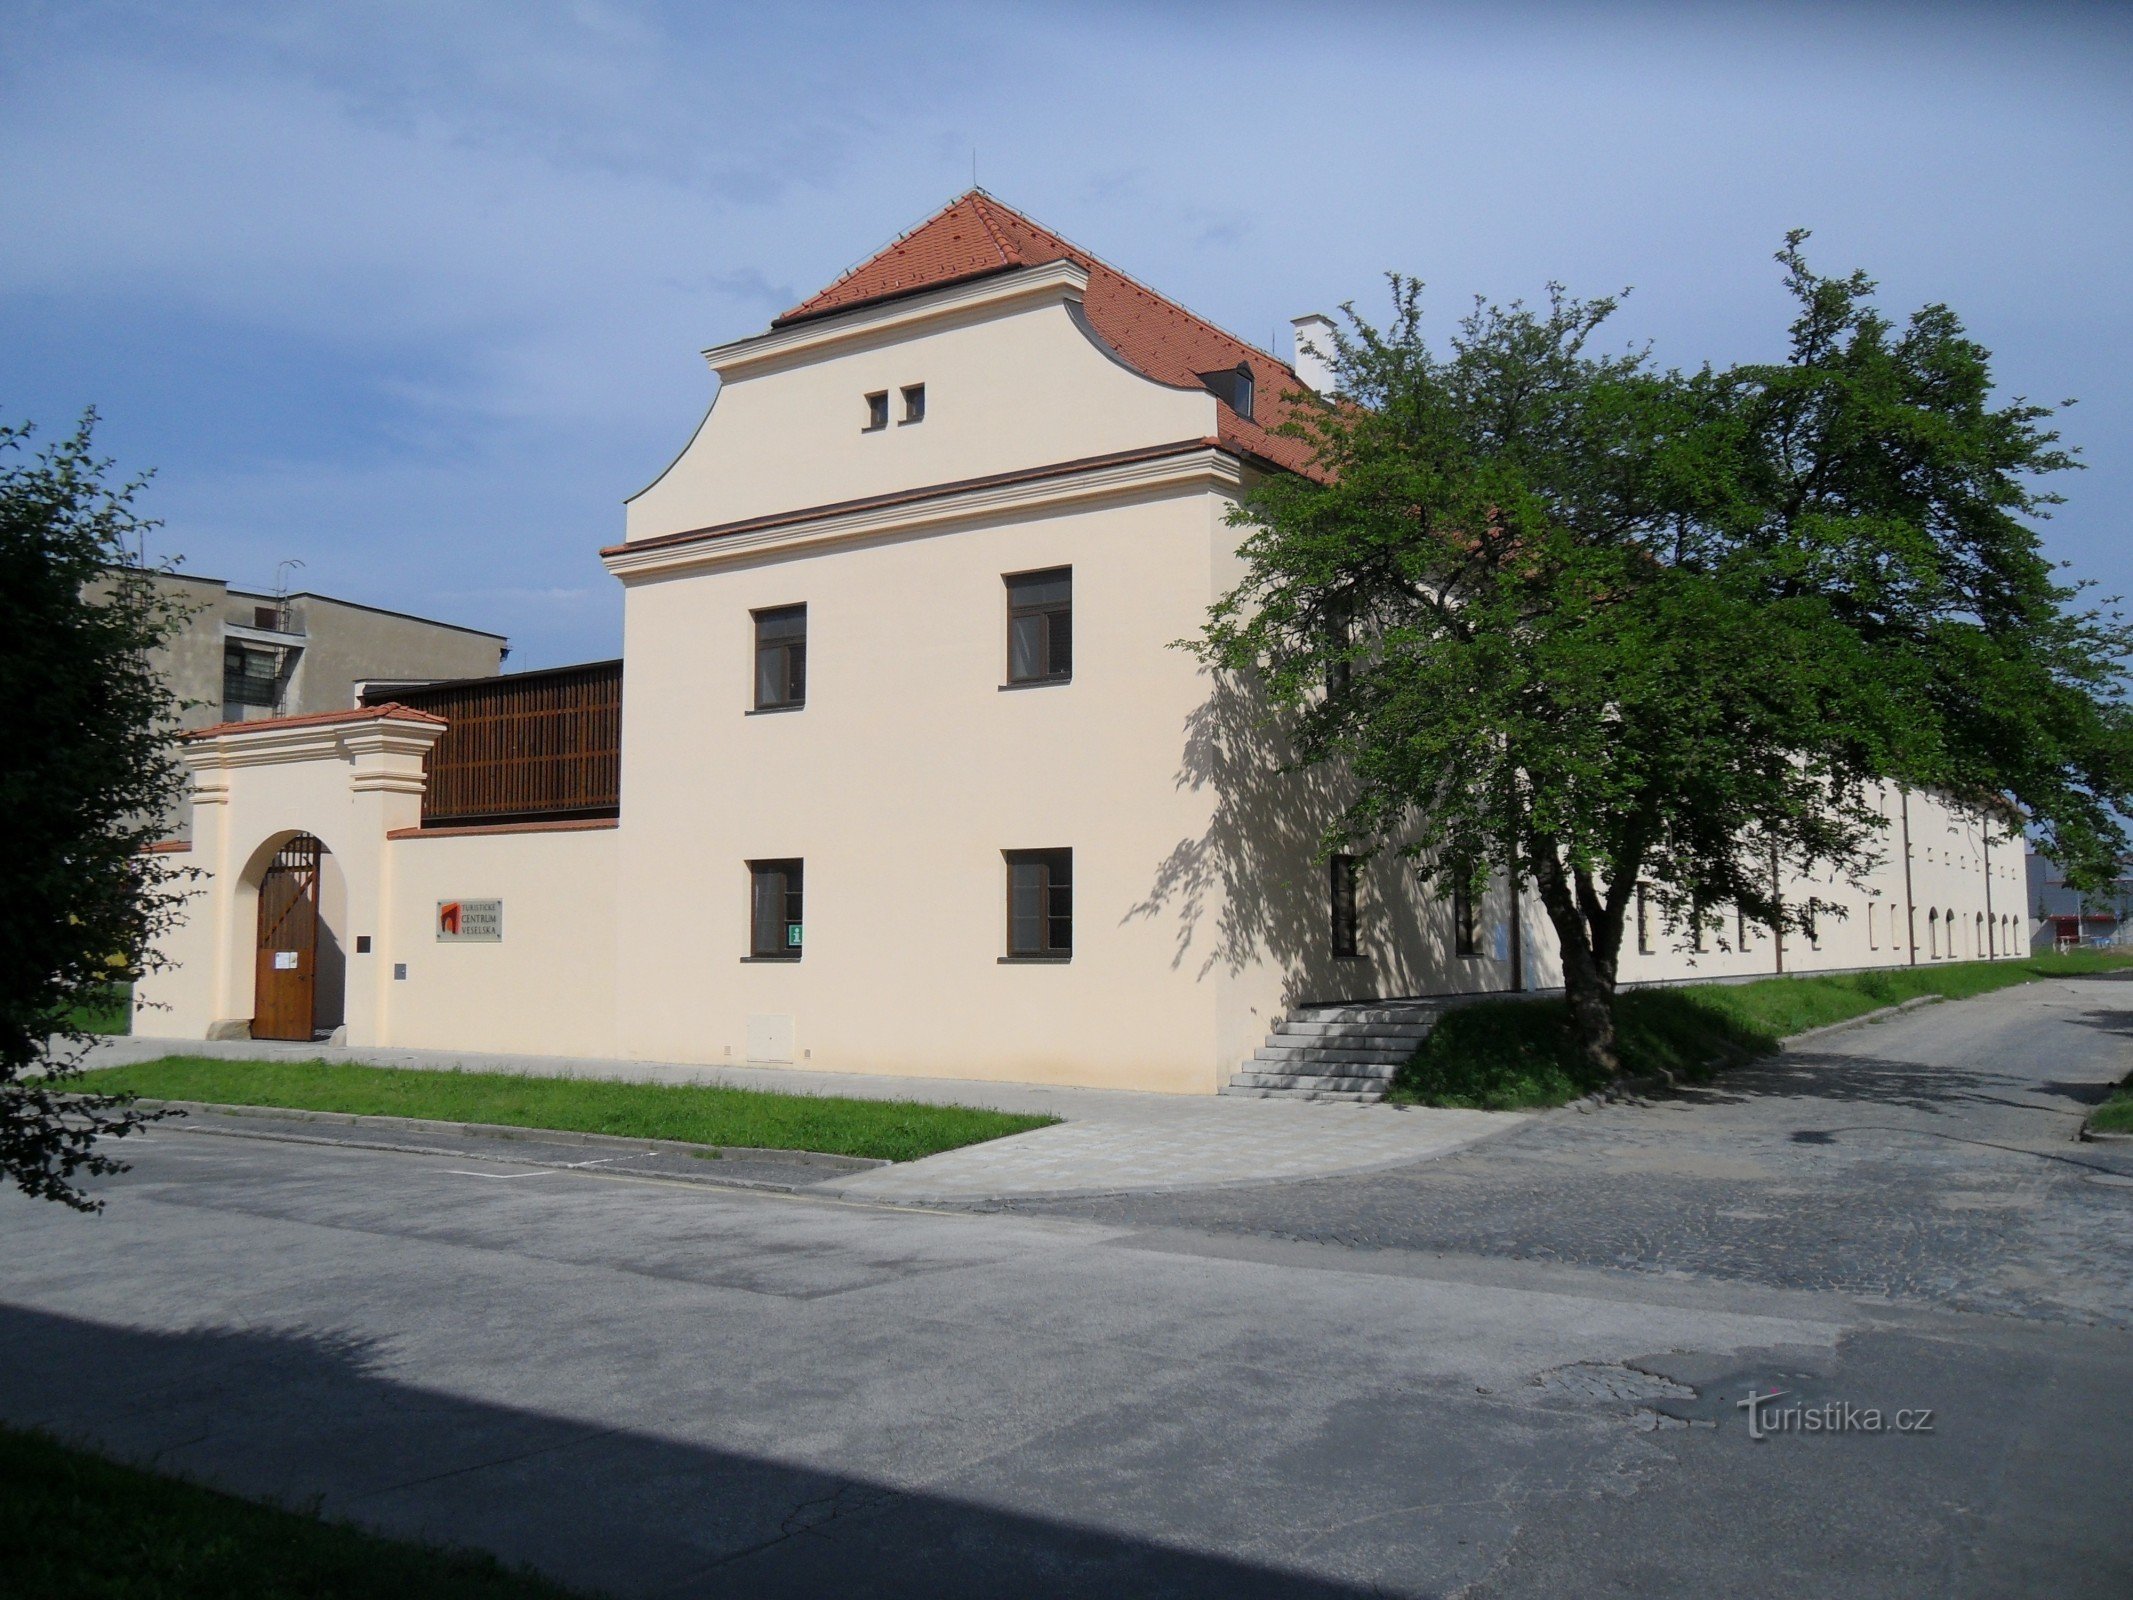 Turisztikai központ Veselska - Manský dvůr